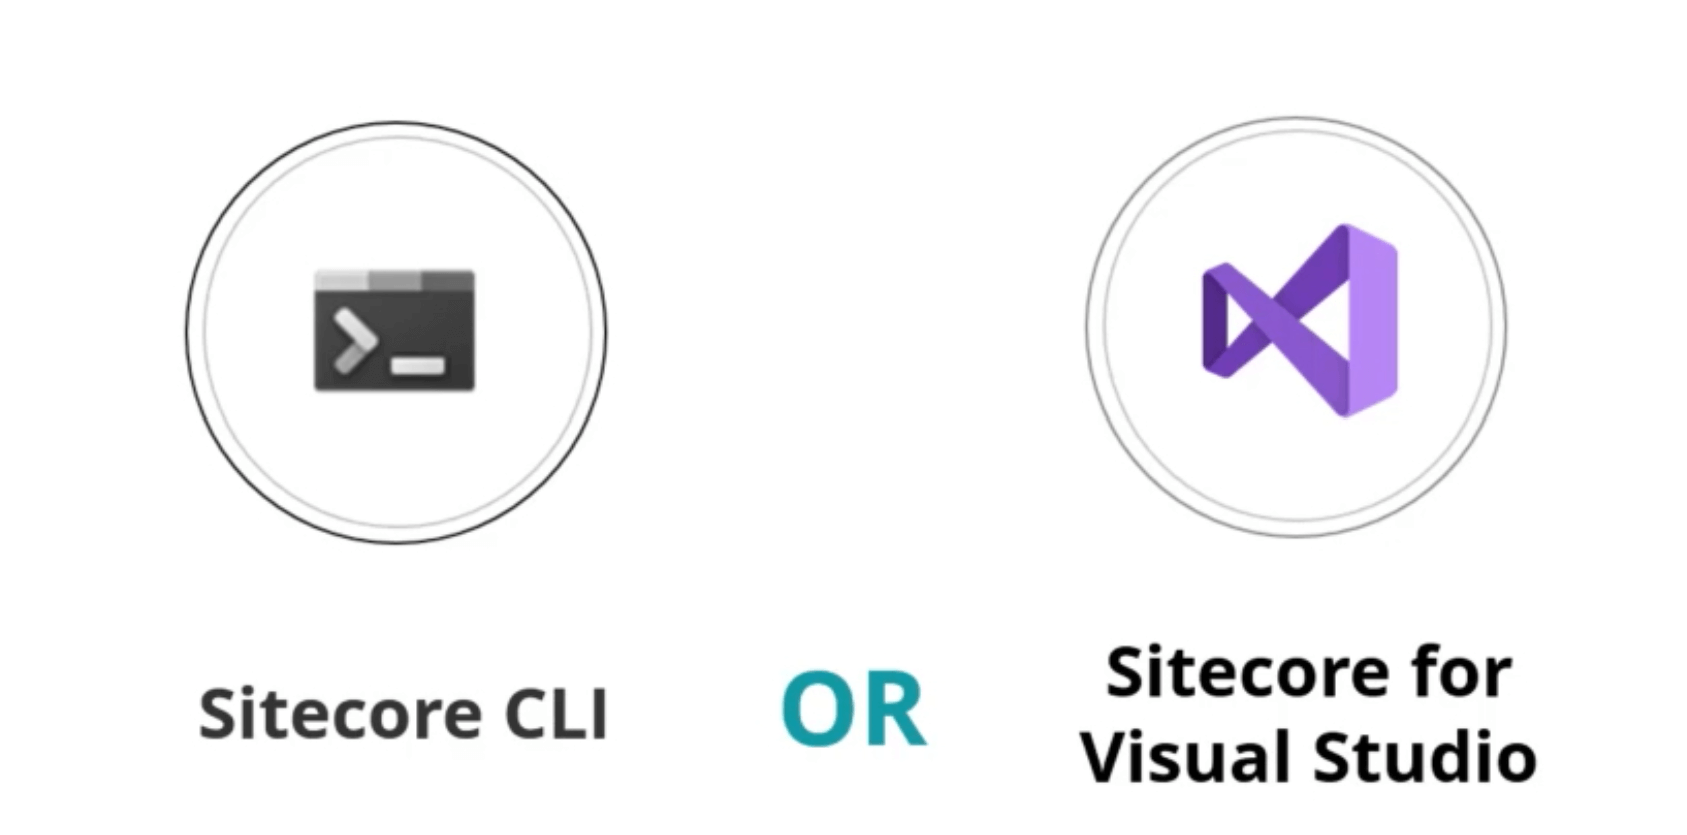 Sitecore CLI or Sitecore for Visual Studio